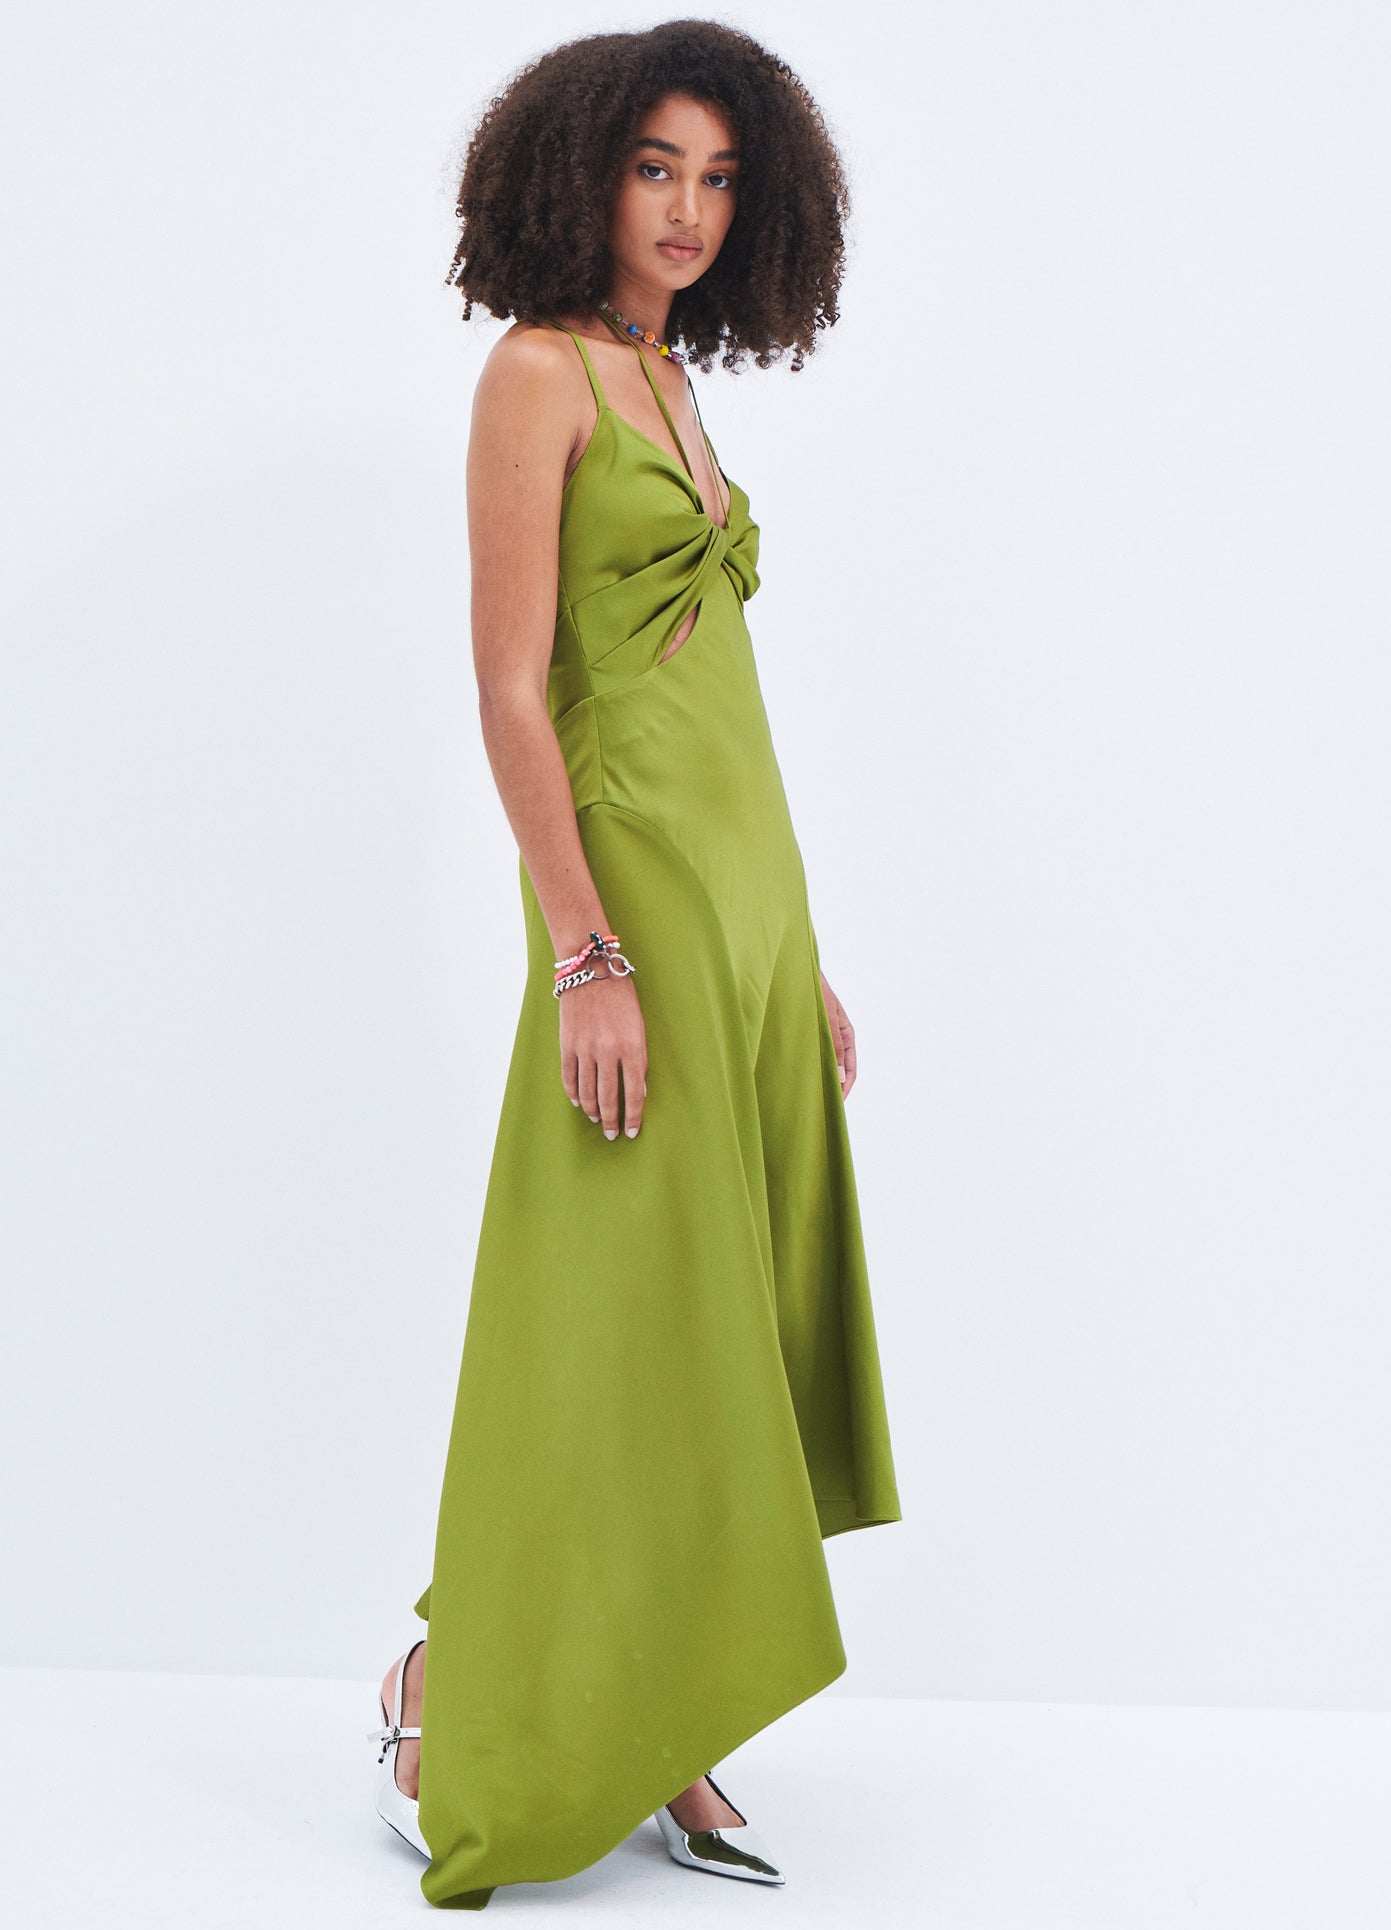 MONSE Satin Draped Slip Dress in Olive on model full side view